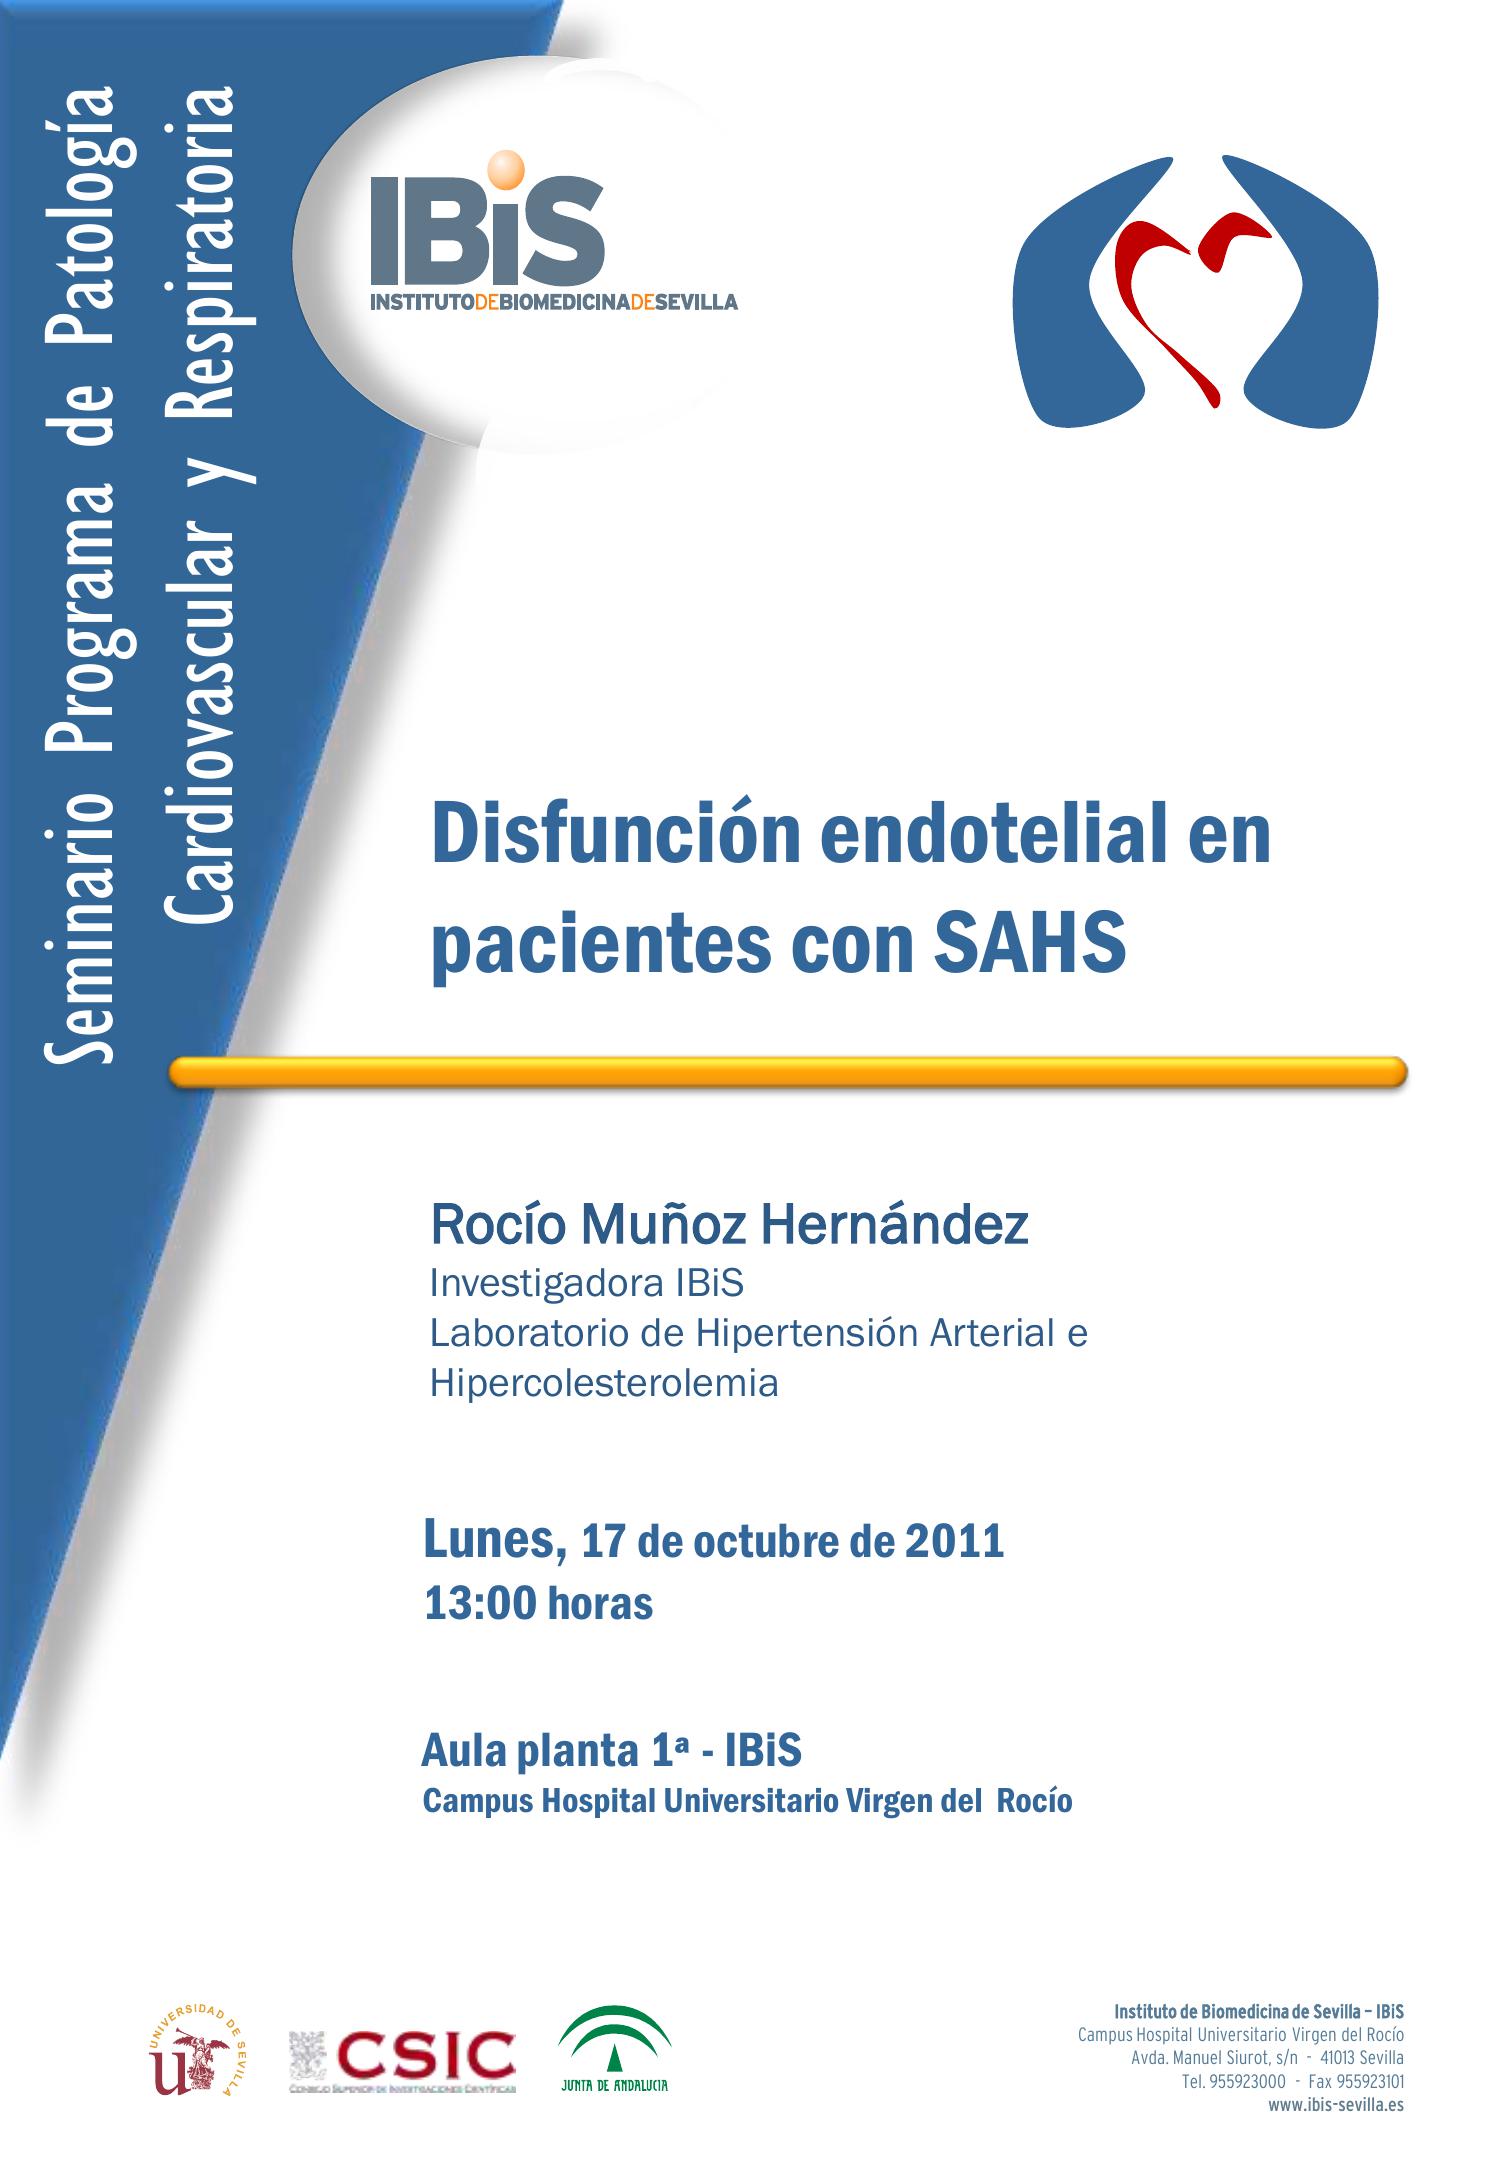 Poster: Disfunción endotelial en pacientes con SAHS.